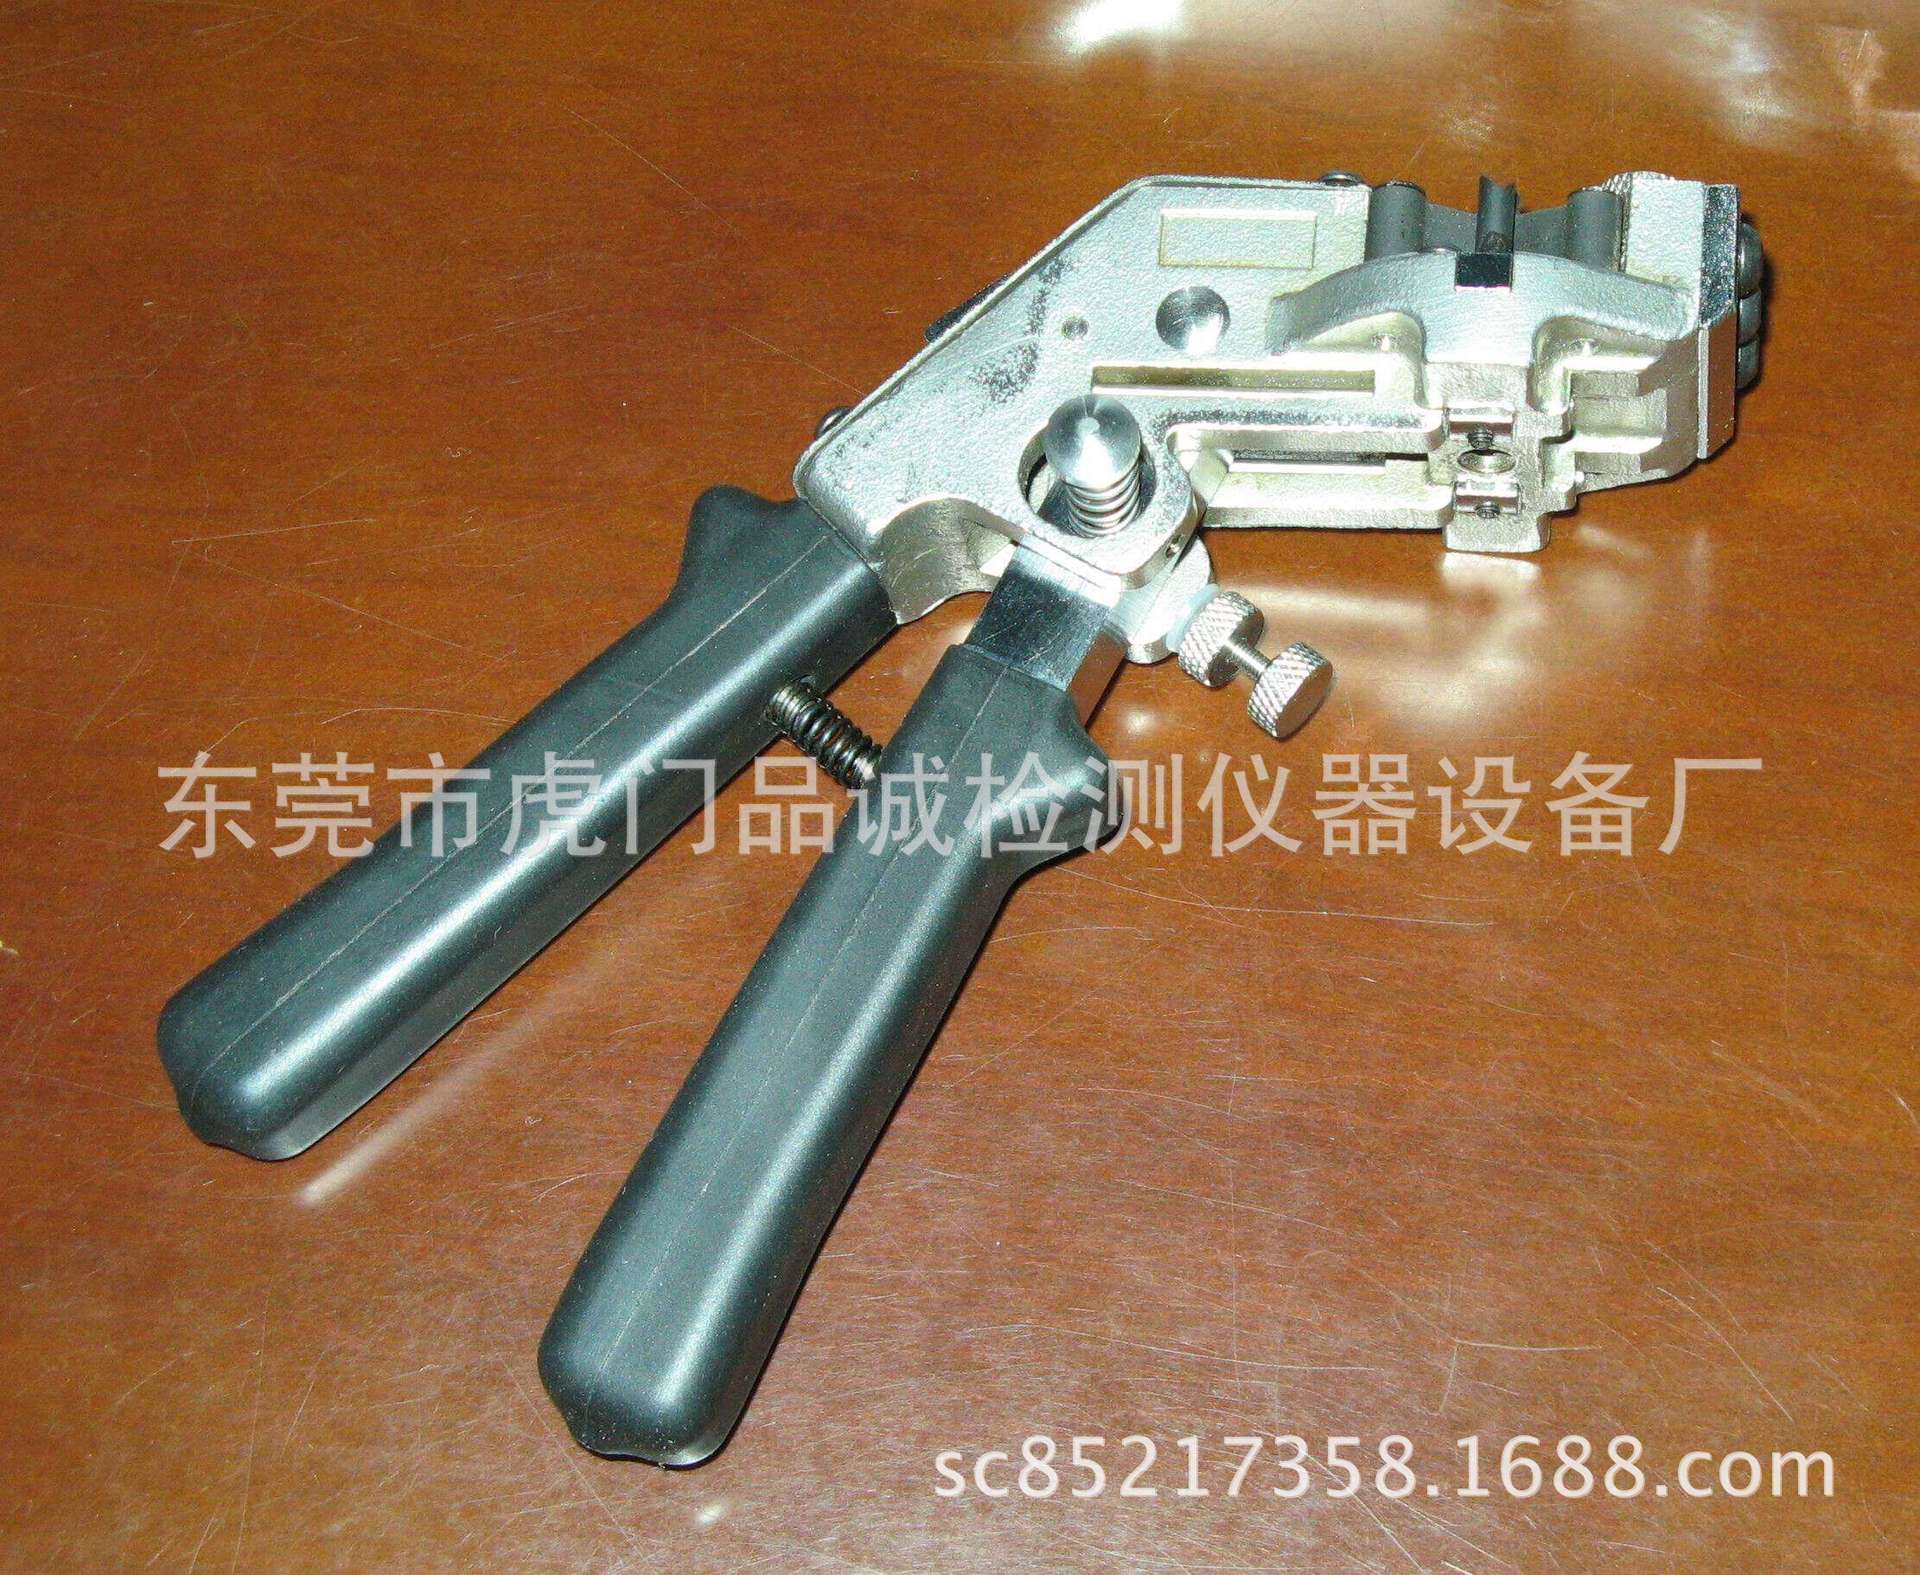 手持式冷焊机 铜线冷焊机 品诚生产碰焊机 接线机示例图5